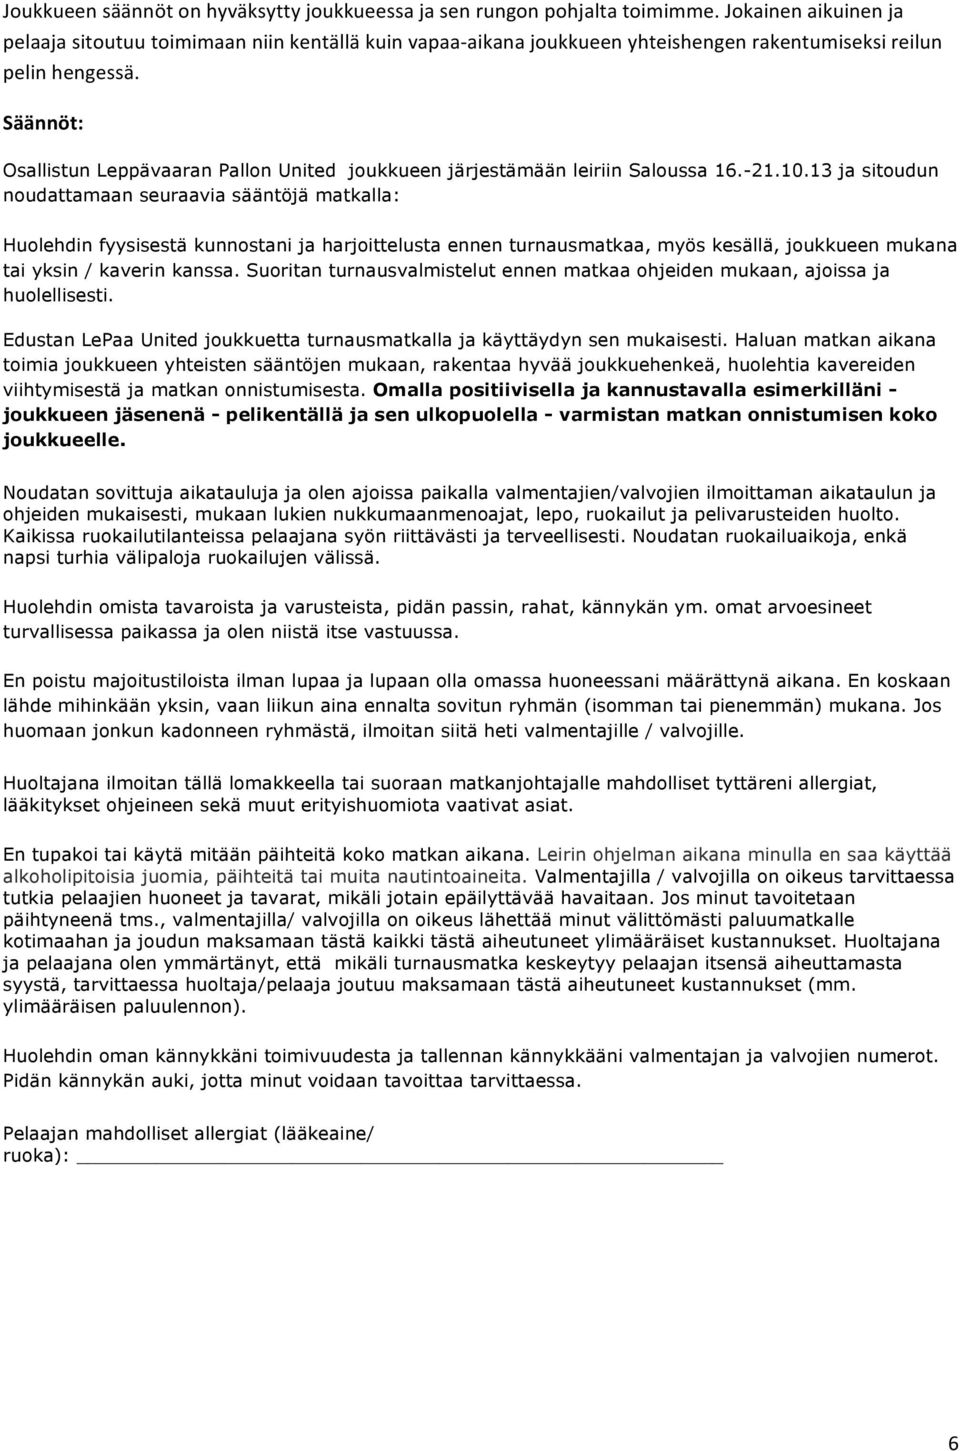 Säännöt: Osallistun Leppävaaran Pallon United joukkueen järjestämään leiriin Saloussa 16.-21.10.